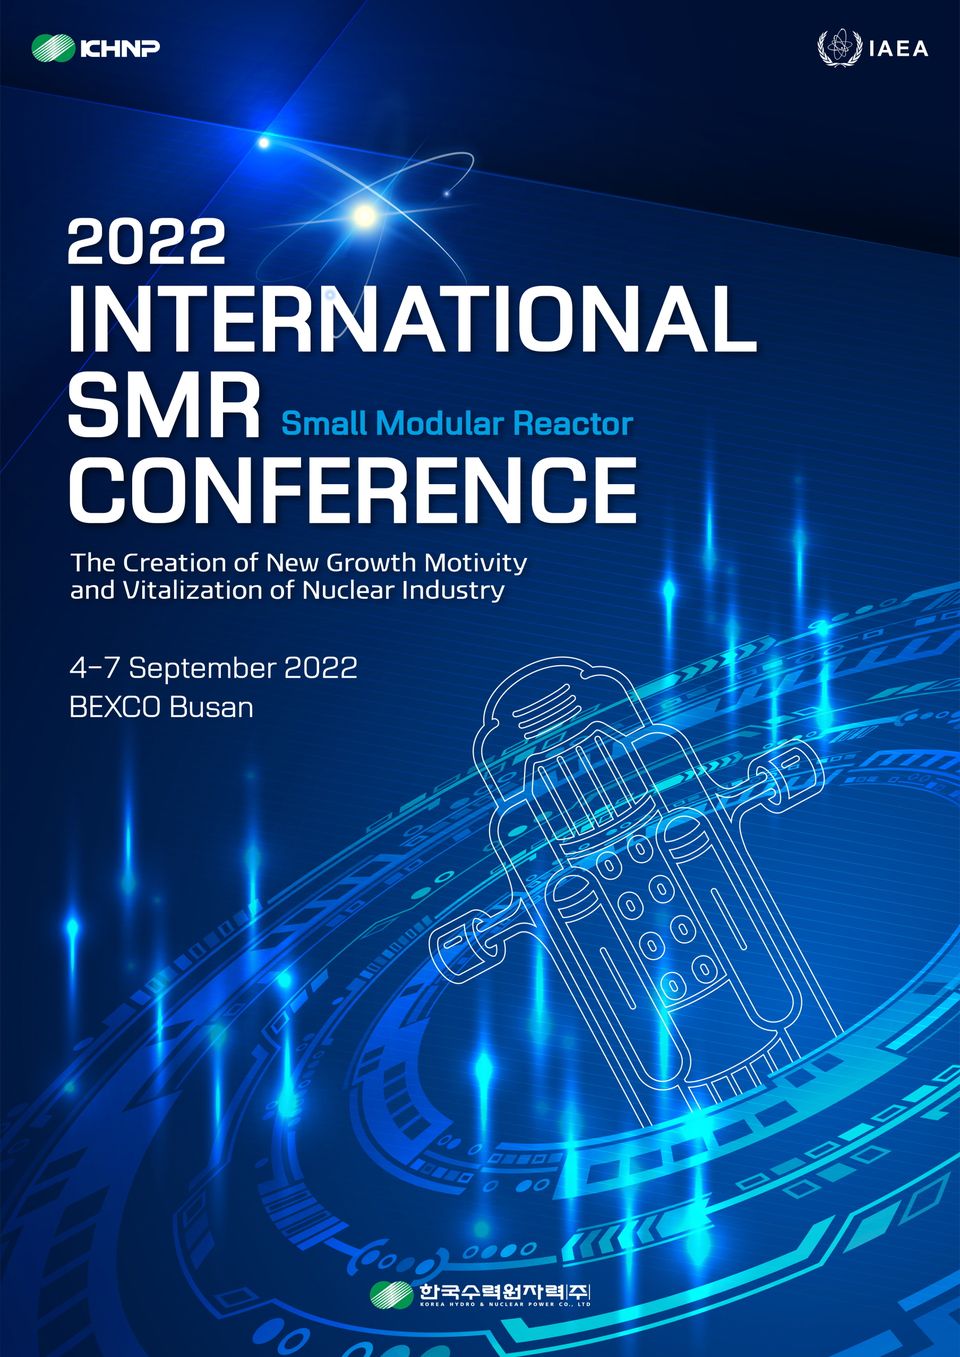 한국수력원자력은 SMR(소형모듈원자로) 사업의 본격 추진을 위해 국내외 관계기관 및 전문가 논의와 정보 교류를 위한 ‘2022 한국수력원자력 SMR 국제 컨퍼런스’를 오는 9월 4일부터 7일까지 부산 벡스코에서 개최한다.